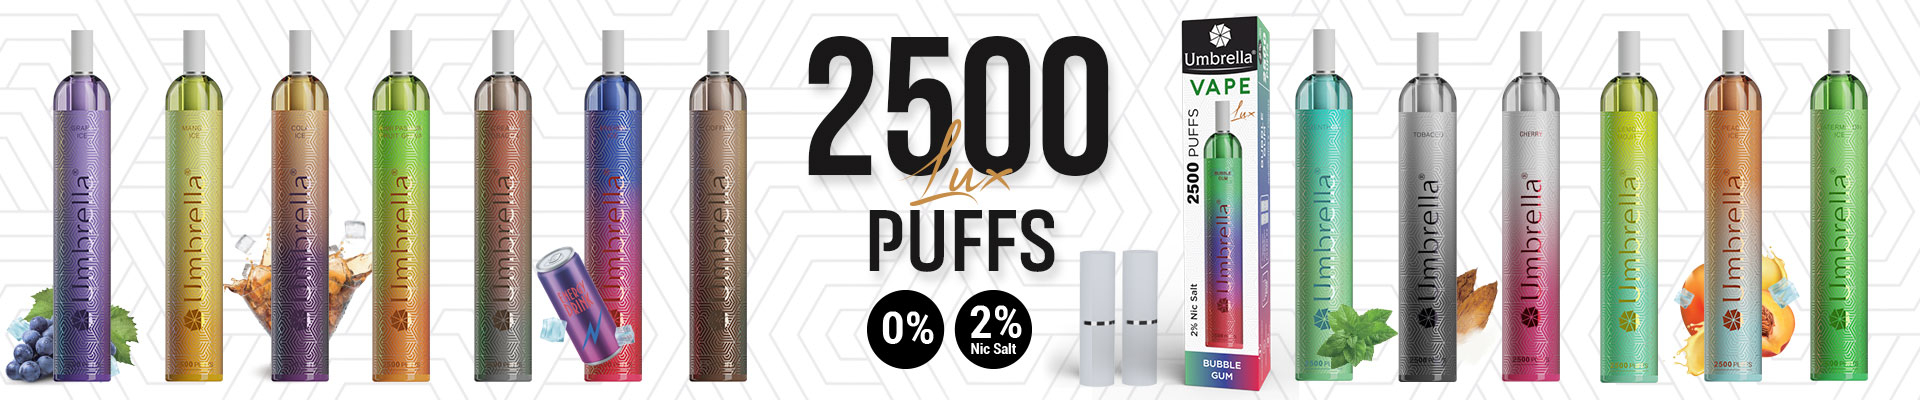 Vape 2500 PUFFS LUX